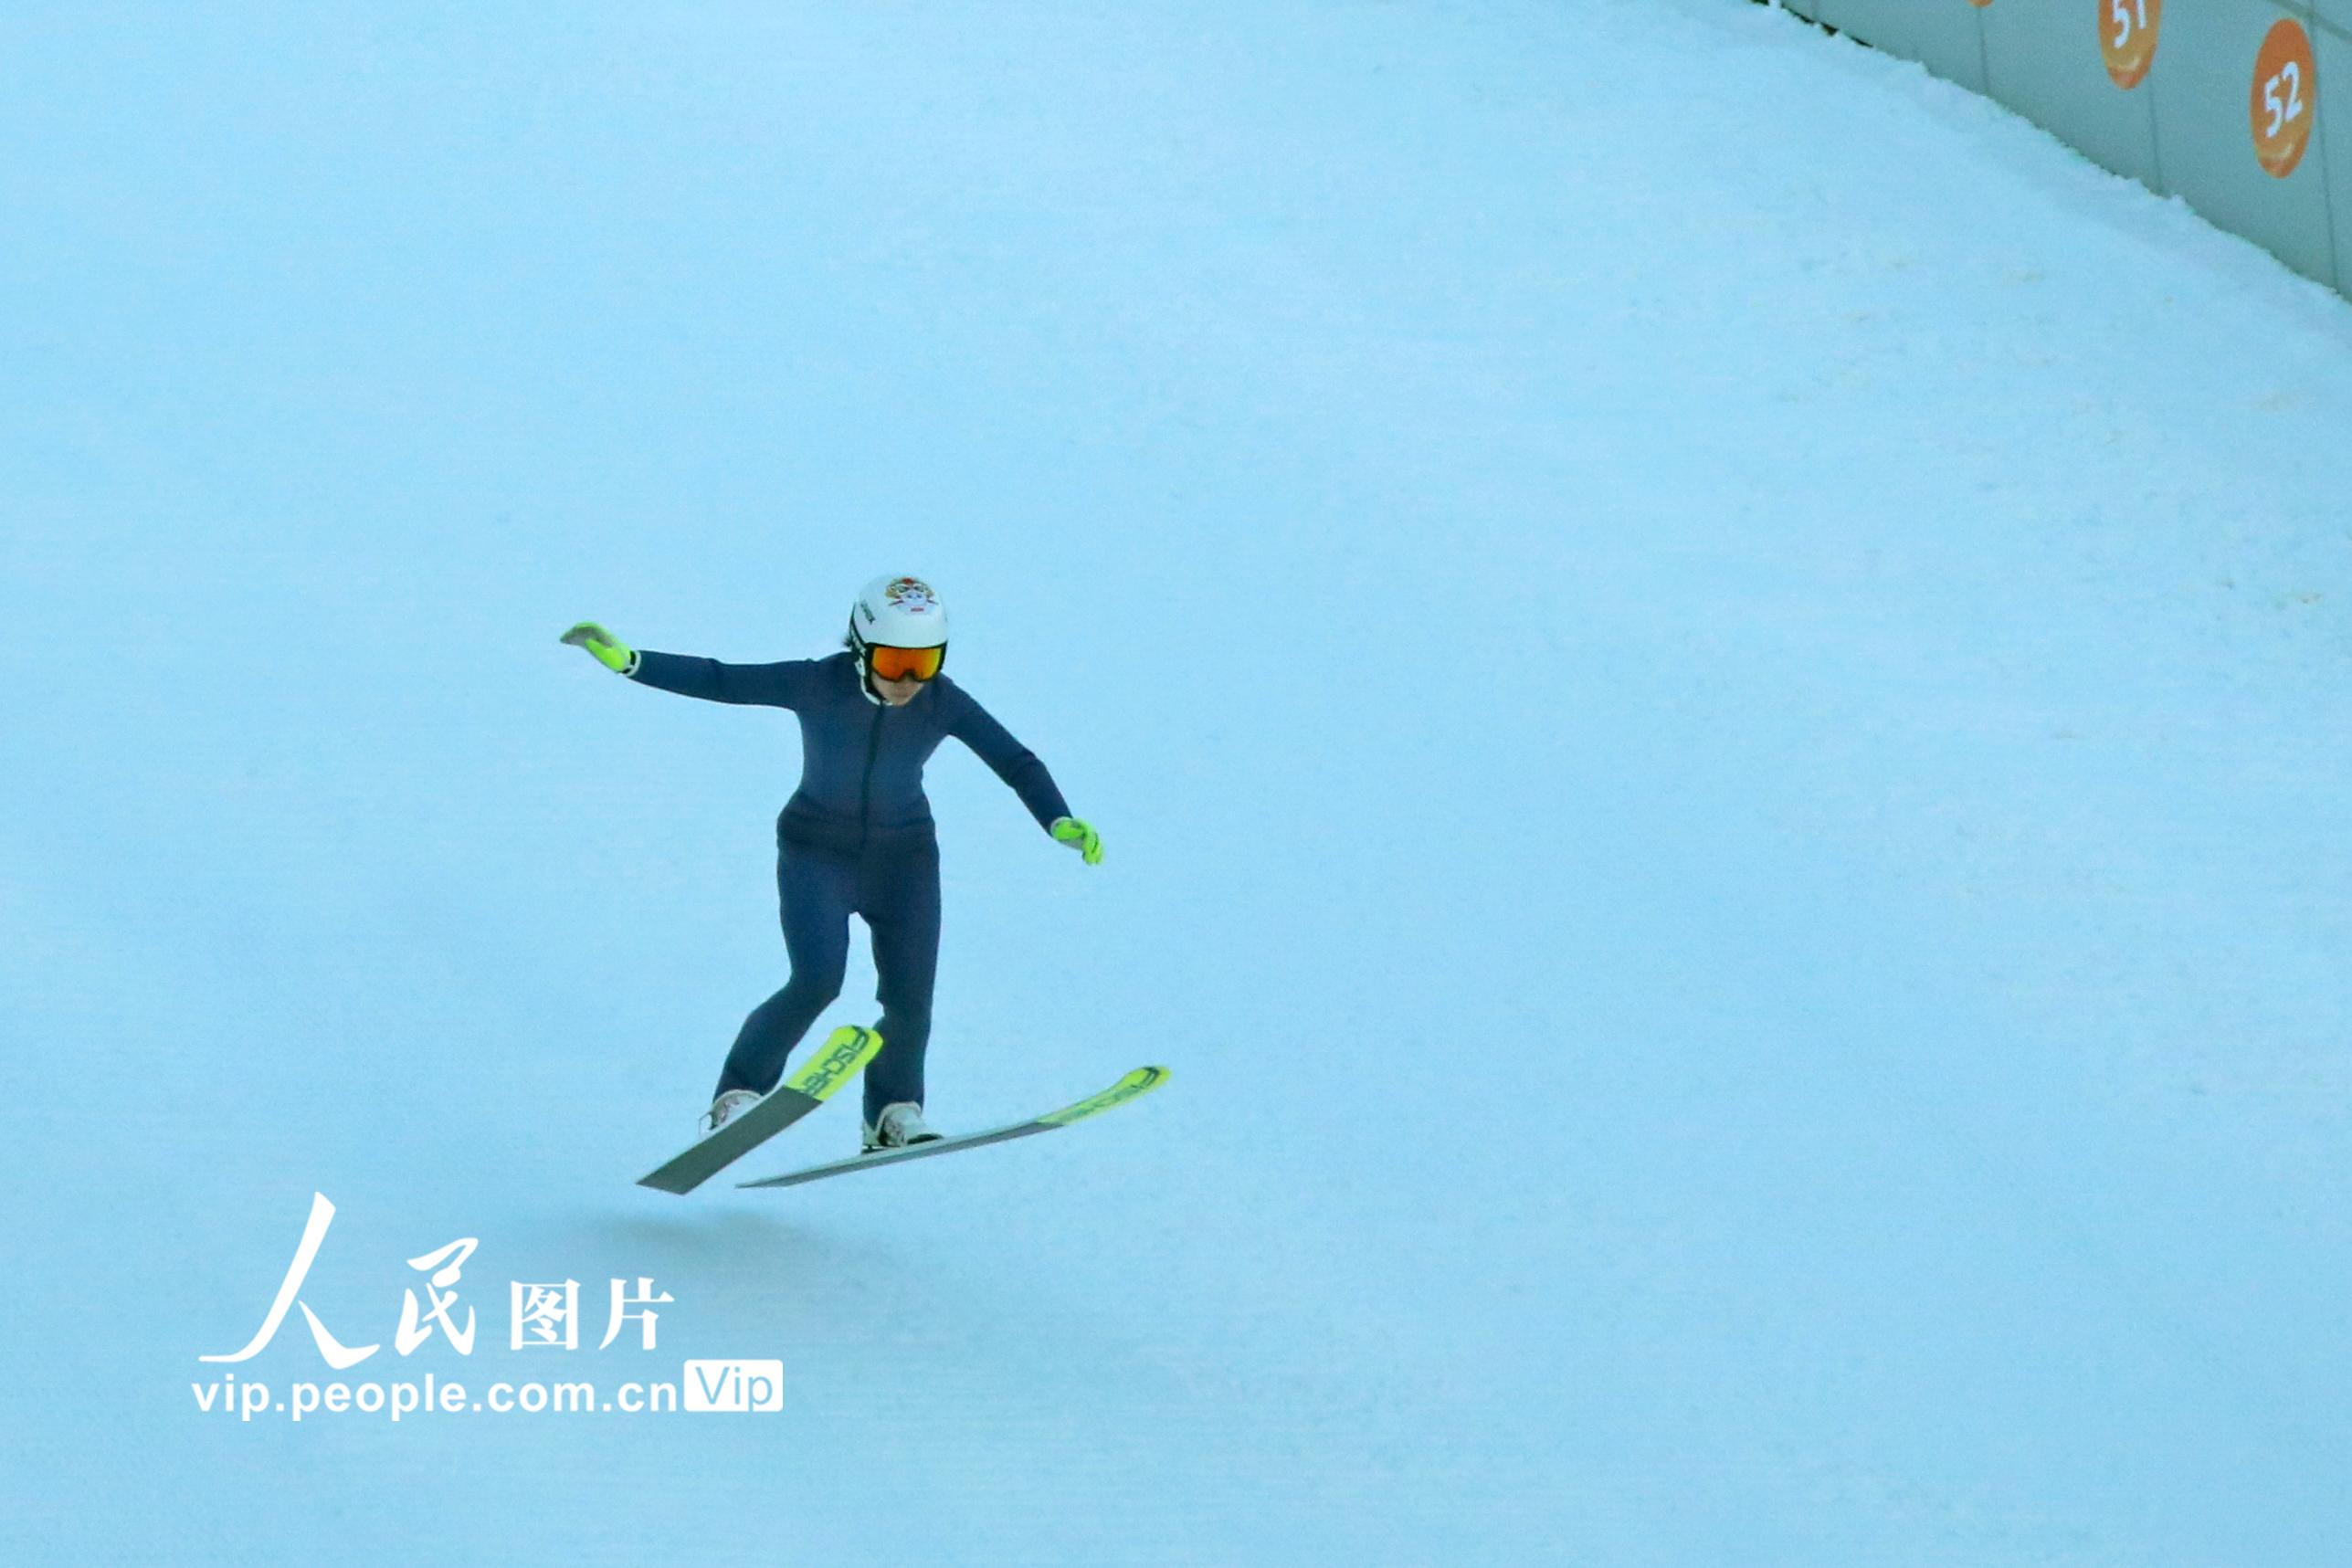 北京2022年冬奧會張家口賽區國家跳台滑雪中心迎來首日試滑【5】